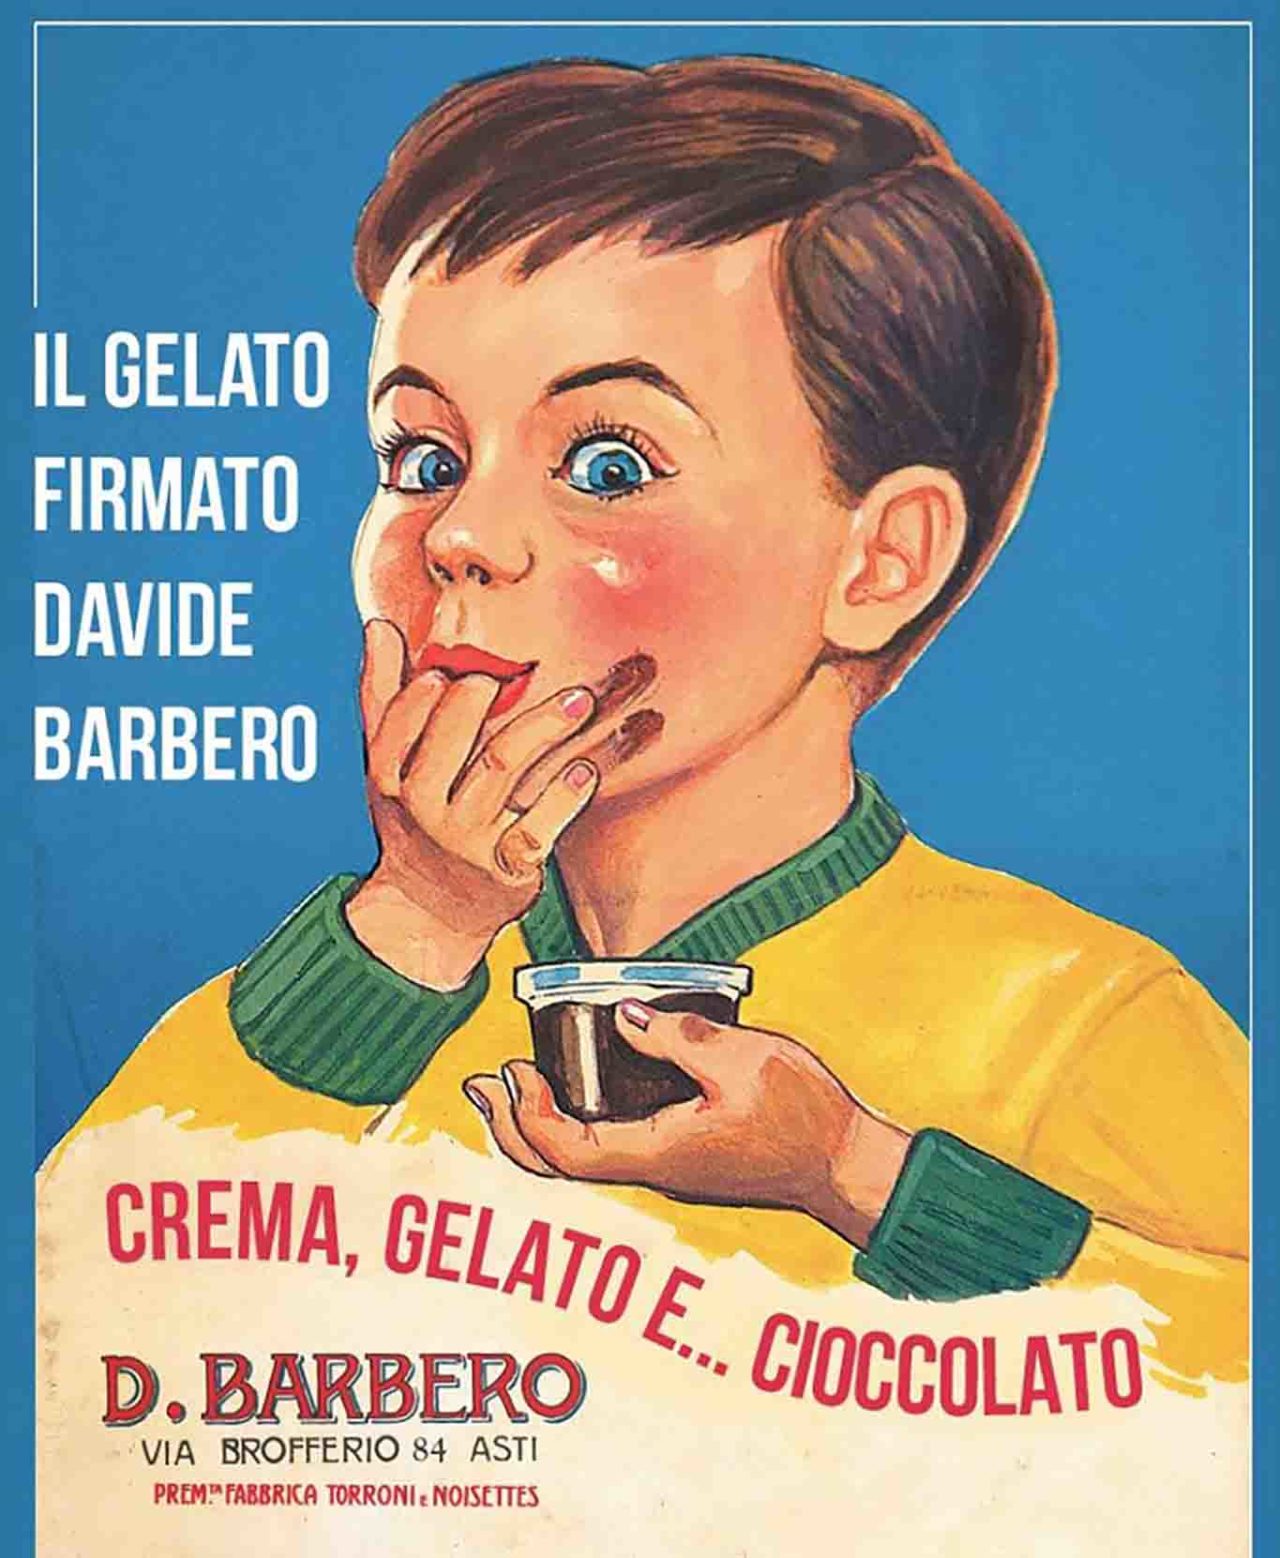 Il gelato firmato Davide Barbero vintage